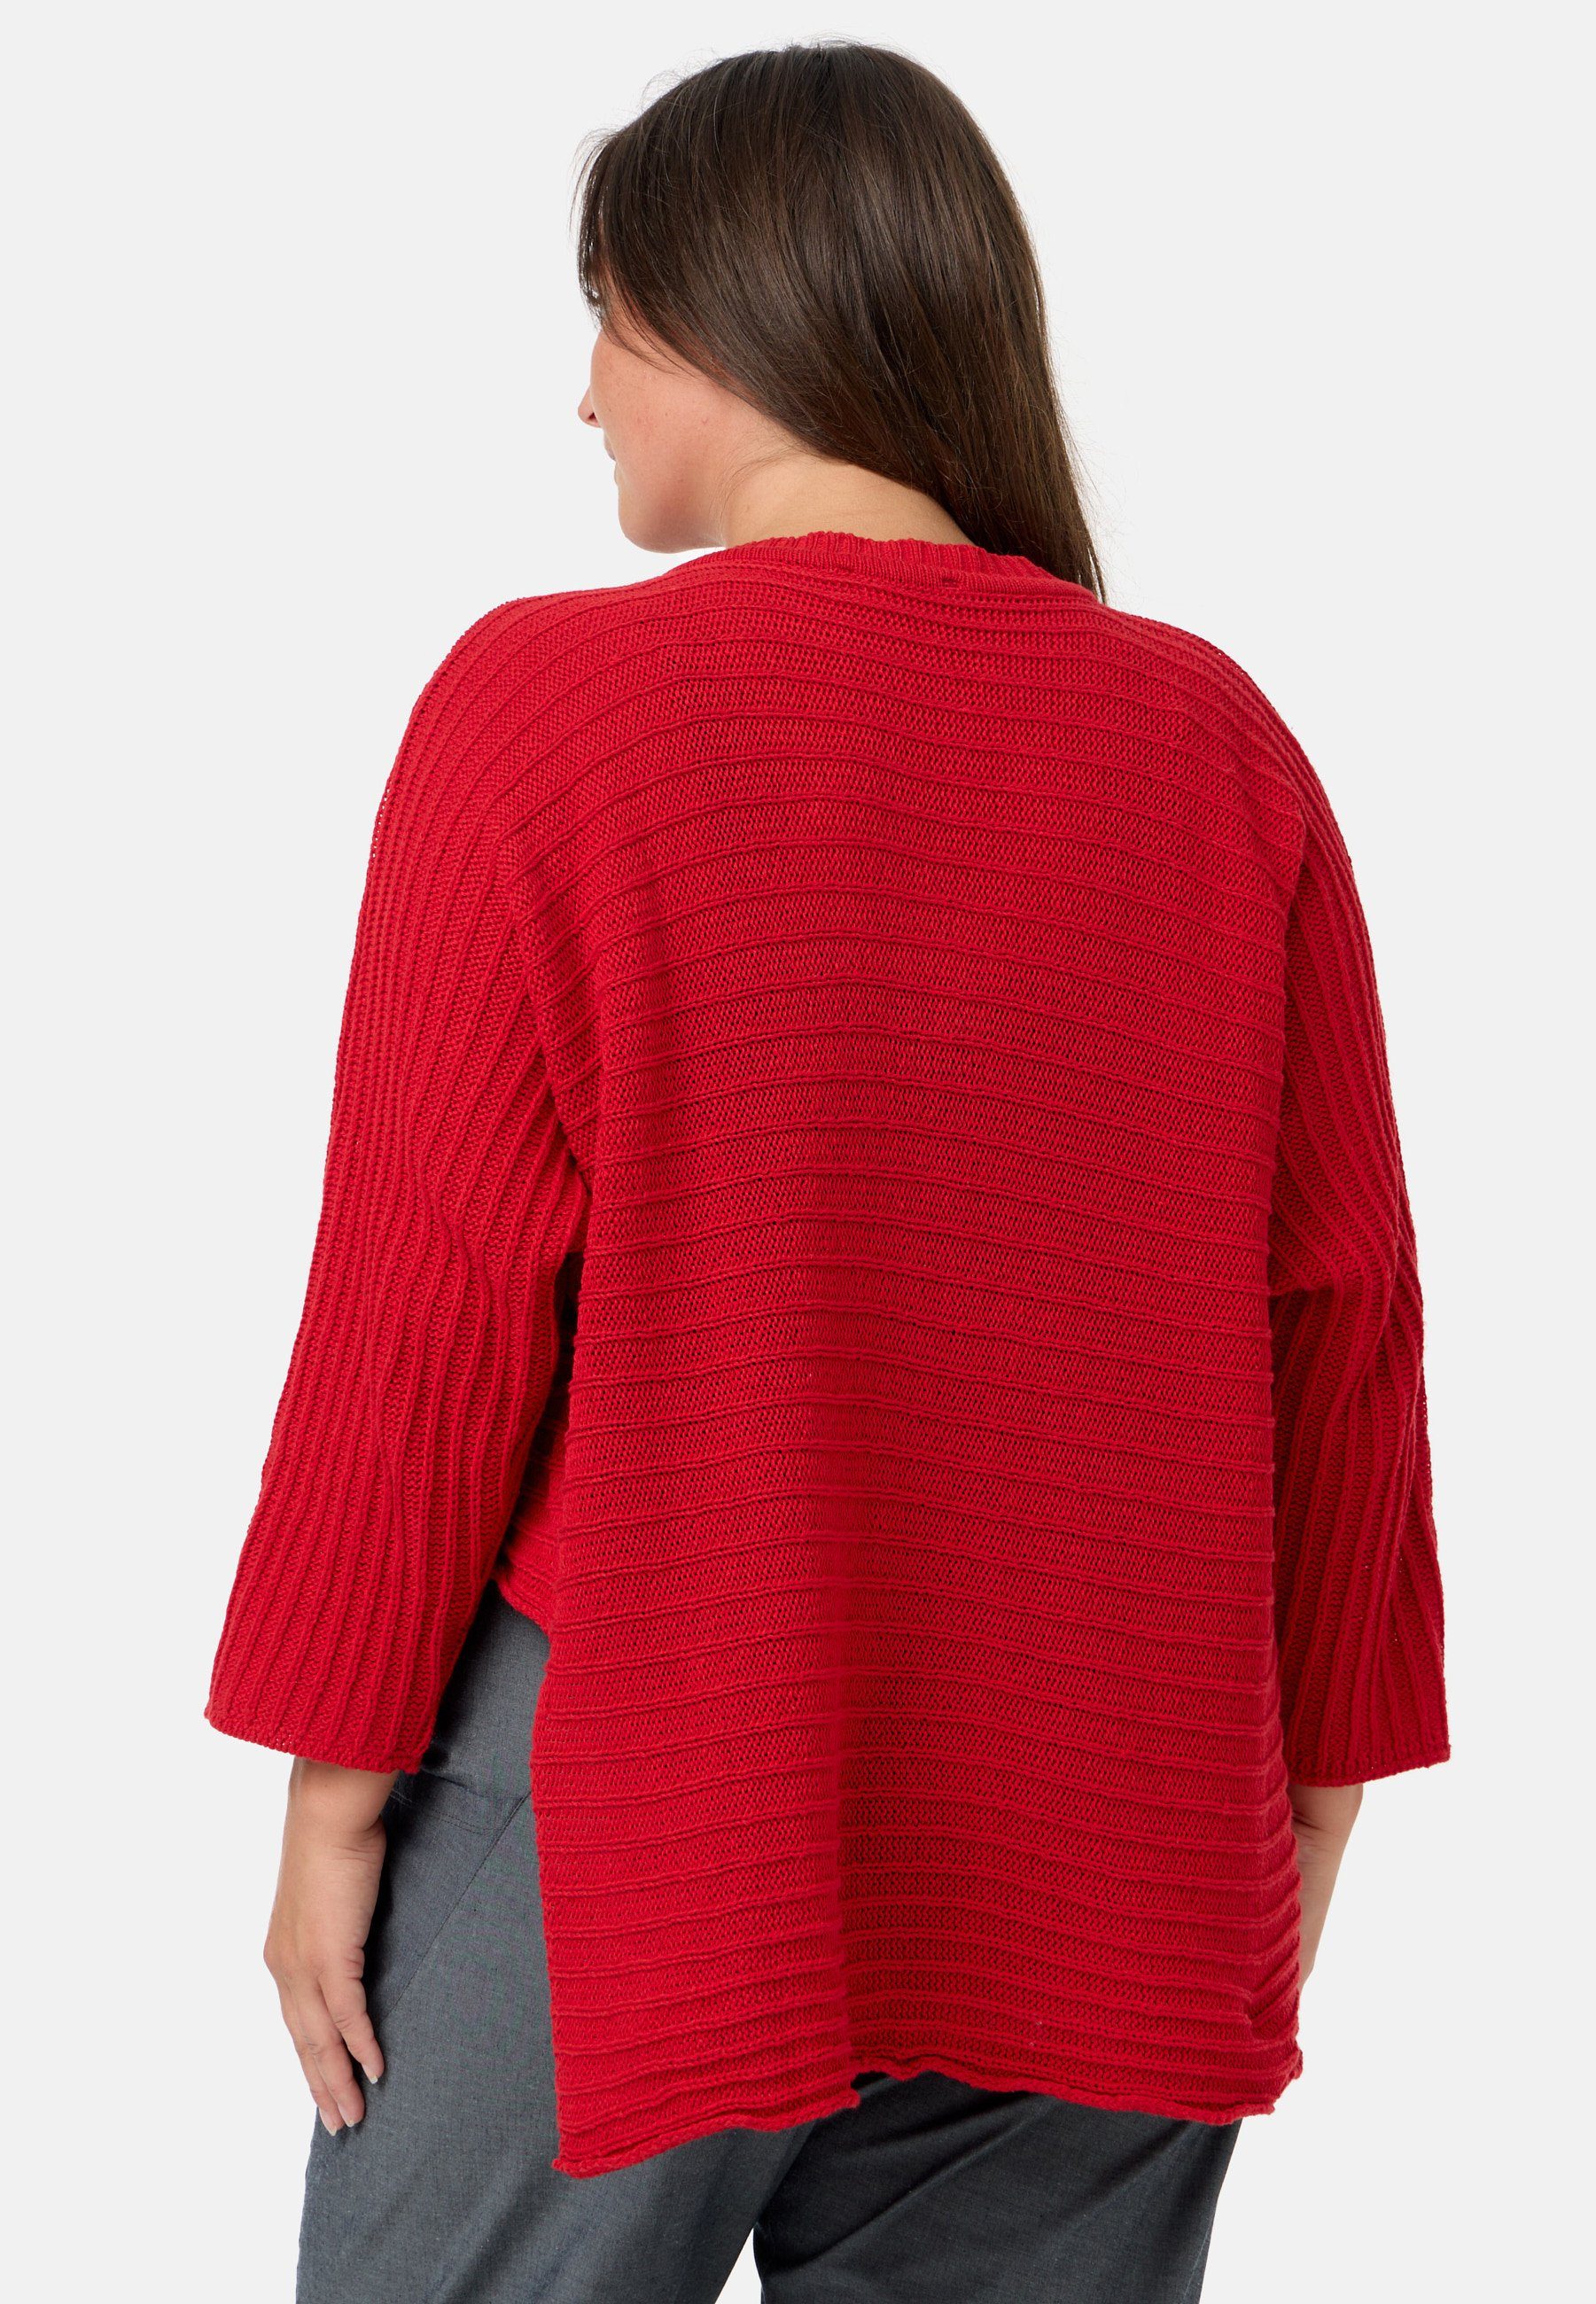 Kekoo Baumwolle Strickpullover 'Pure' Strickshirt 100% aus Rot Stil asymmetrischem im